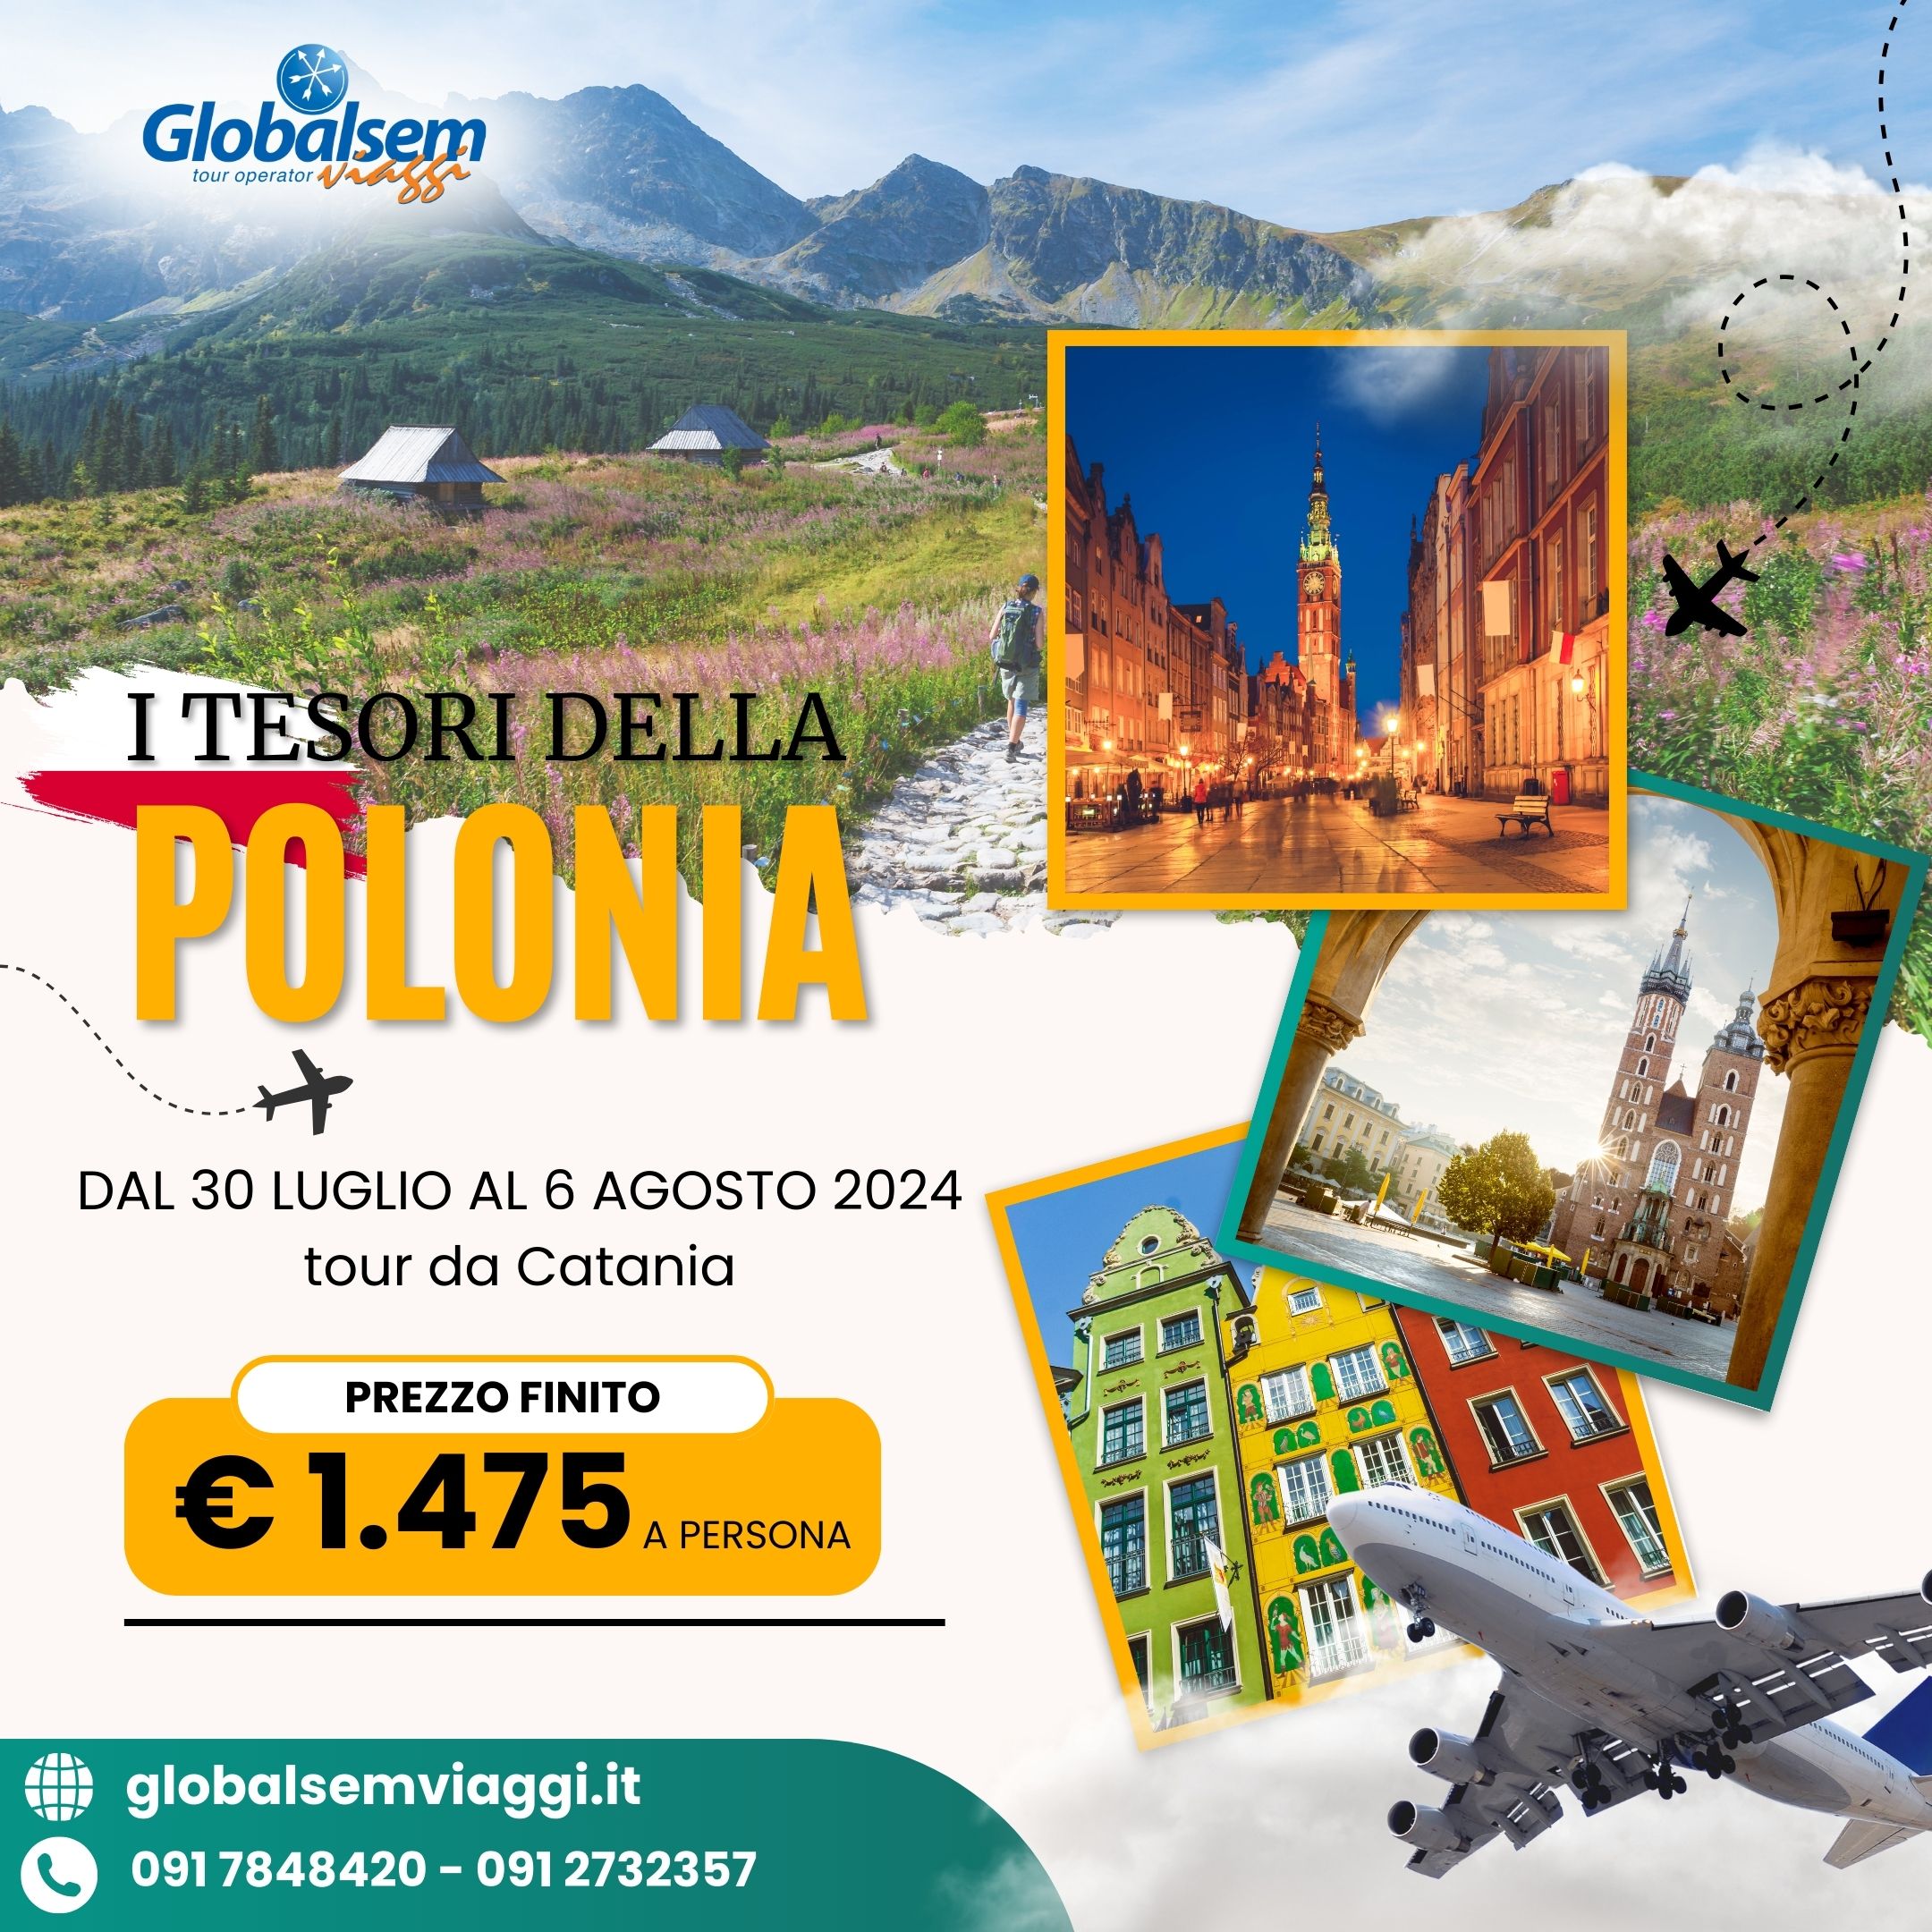 Tour "I tesori della Polonia", da Catania, dal 30 Luglio al 6 Agosto.